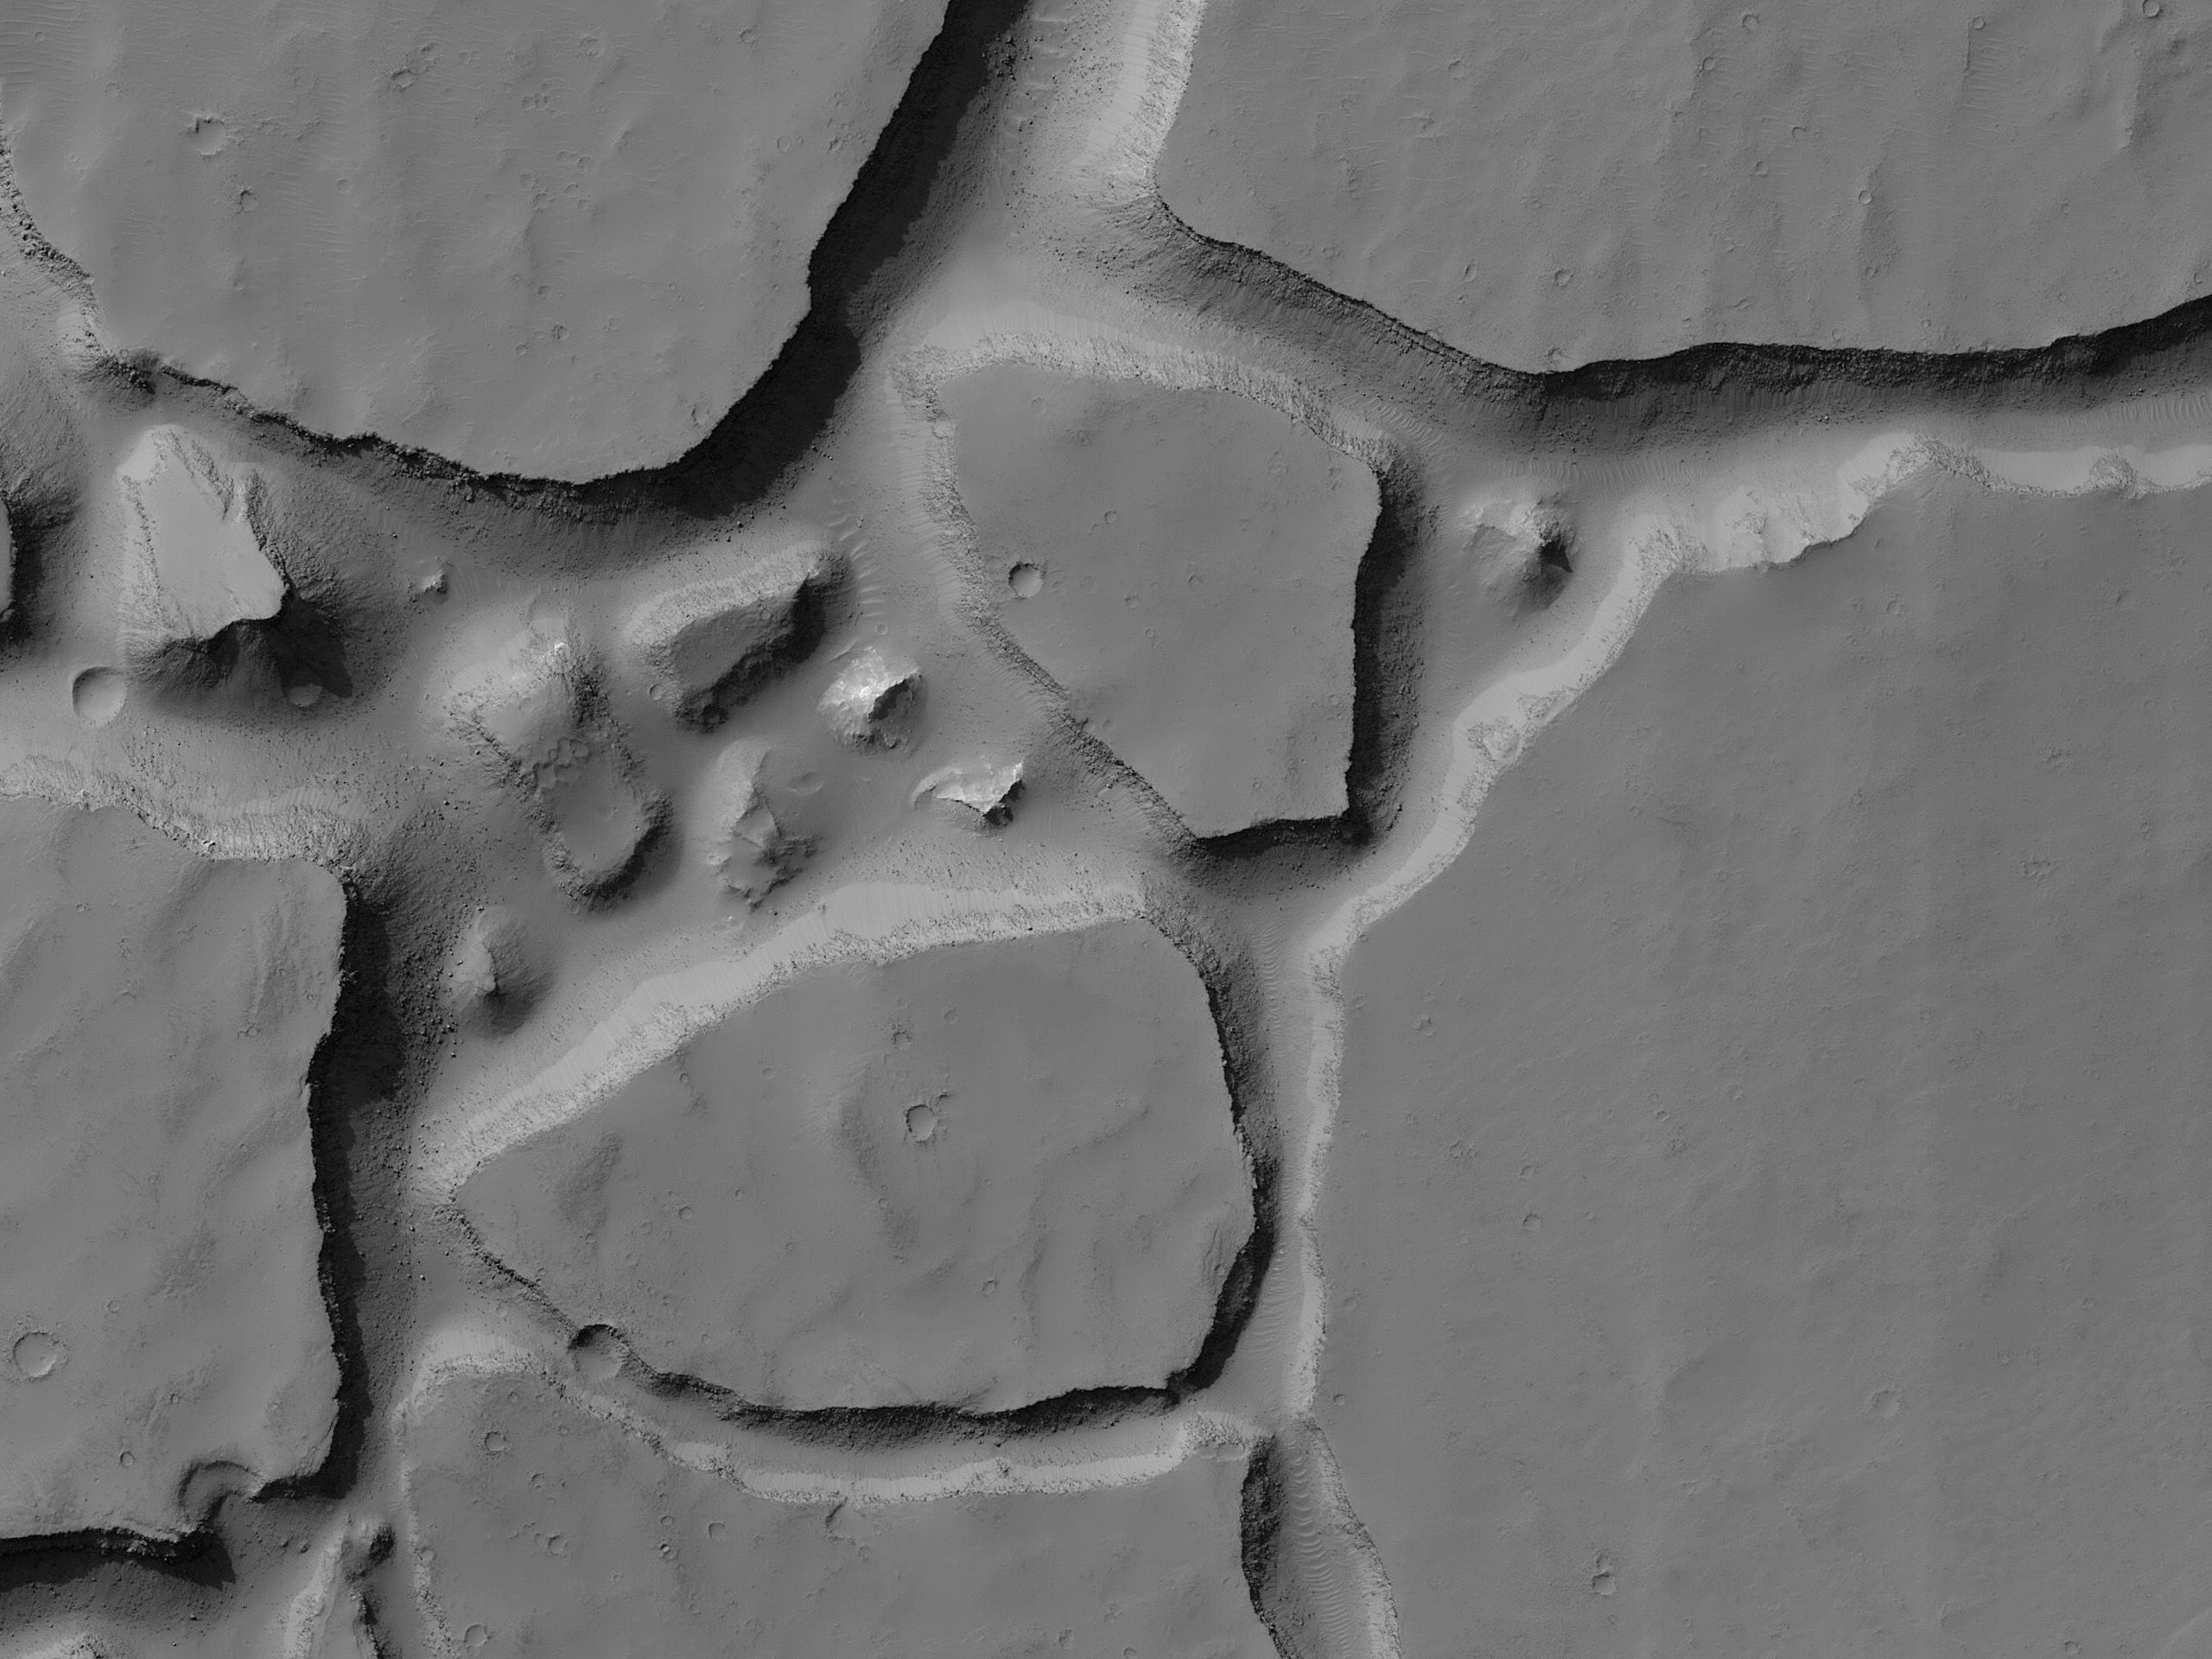 שטח סדוק בקניון קנדור קזמה (Candor Chasma)